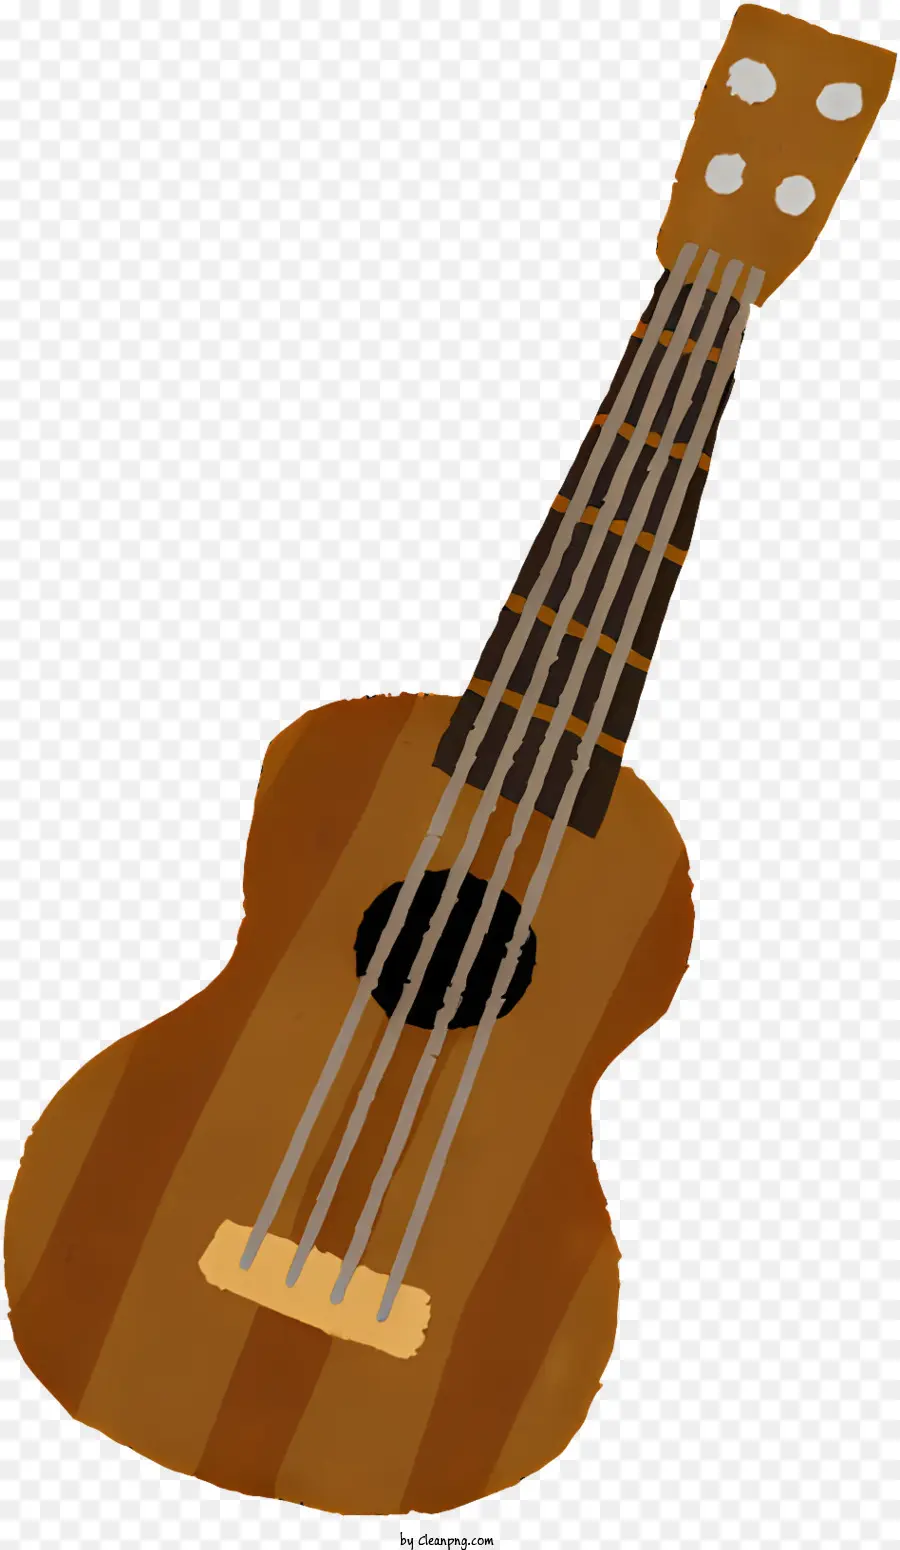 Music Brown Guitar Round Body Guitar Guitar Guitar Cuitar Neck - Immagine della chitarra marrone con corpo rotondo e corde